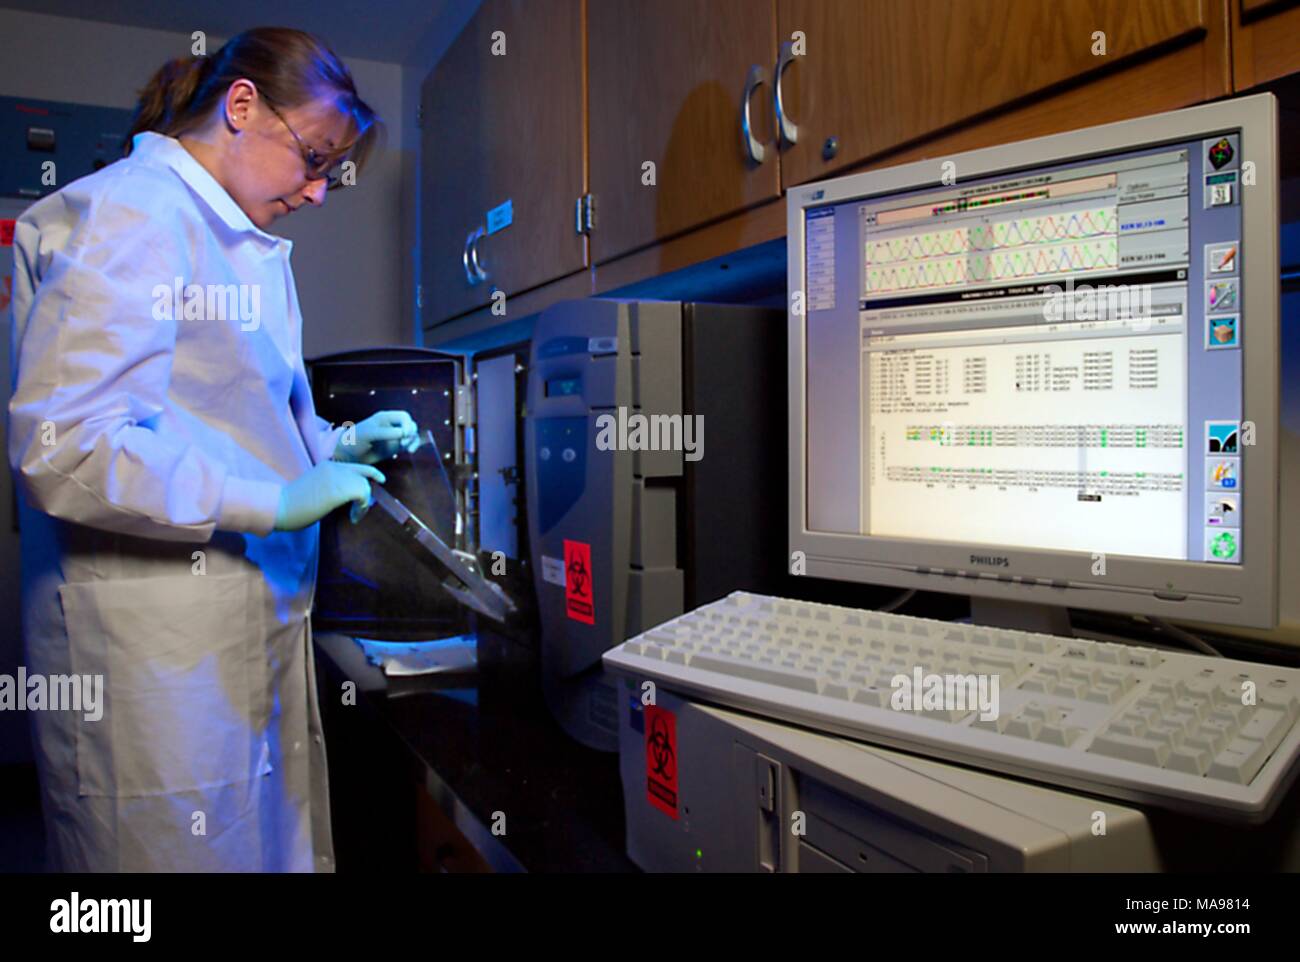 Fotografía de Amanda McNulty, un investigador en el laboratorio del CDC, trabajando en pruebas, utilizando el sistema Trugene Siemens para secuenciar el VIH, VHB y VHC en ADN para examinar su resistencia a los medicamentos antirretrovirales, como parte del programa mundial de sida, 2007. Imagen cortesía de CDC/Hsi Liu, James Gathany. () Foto de stock